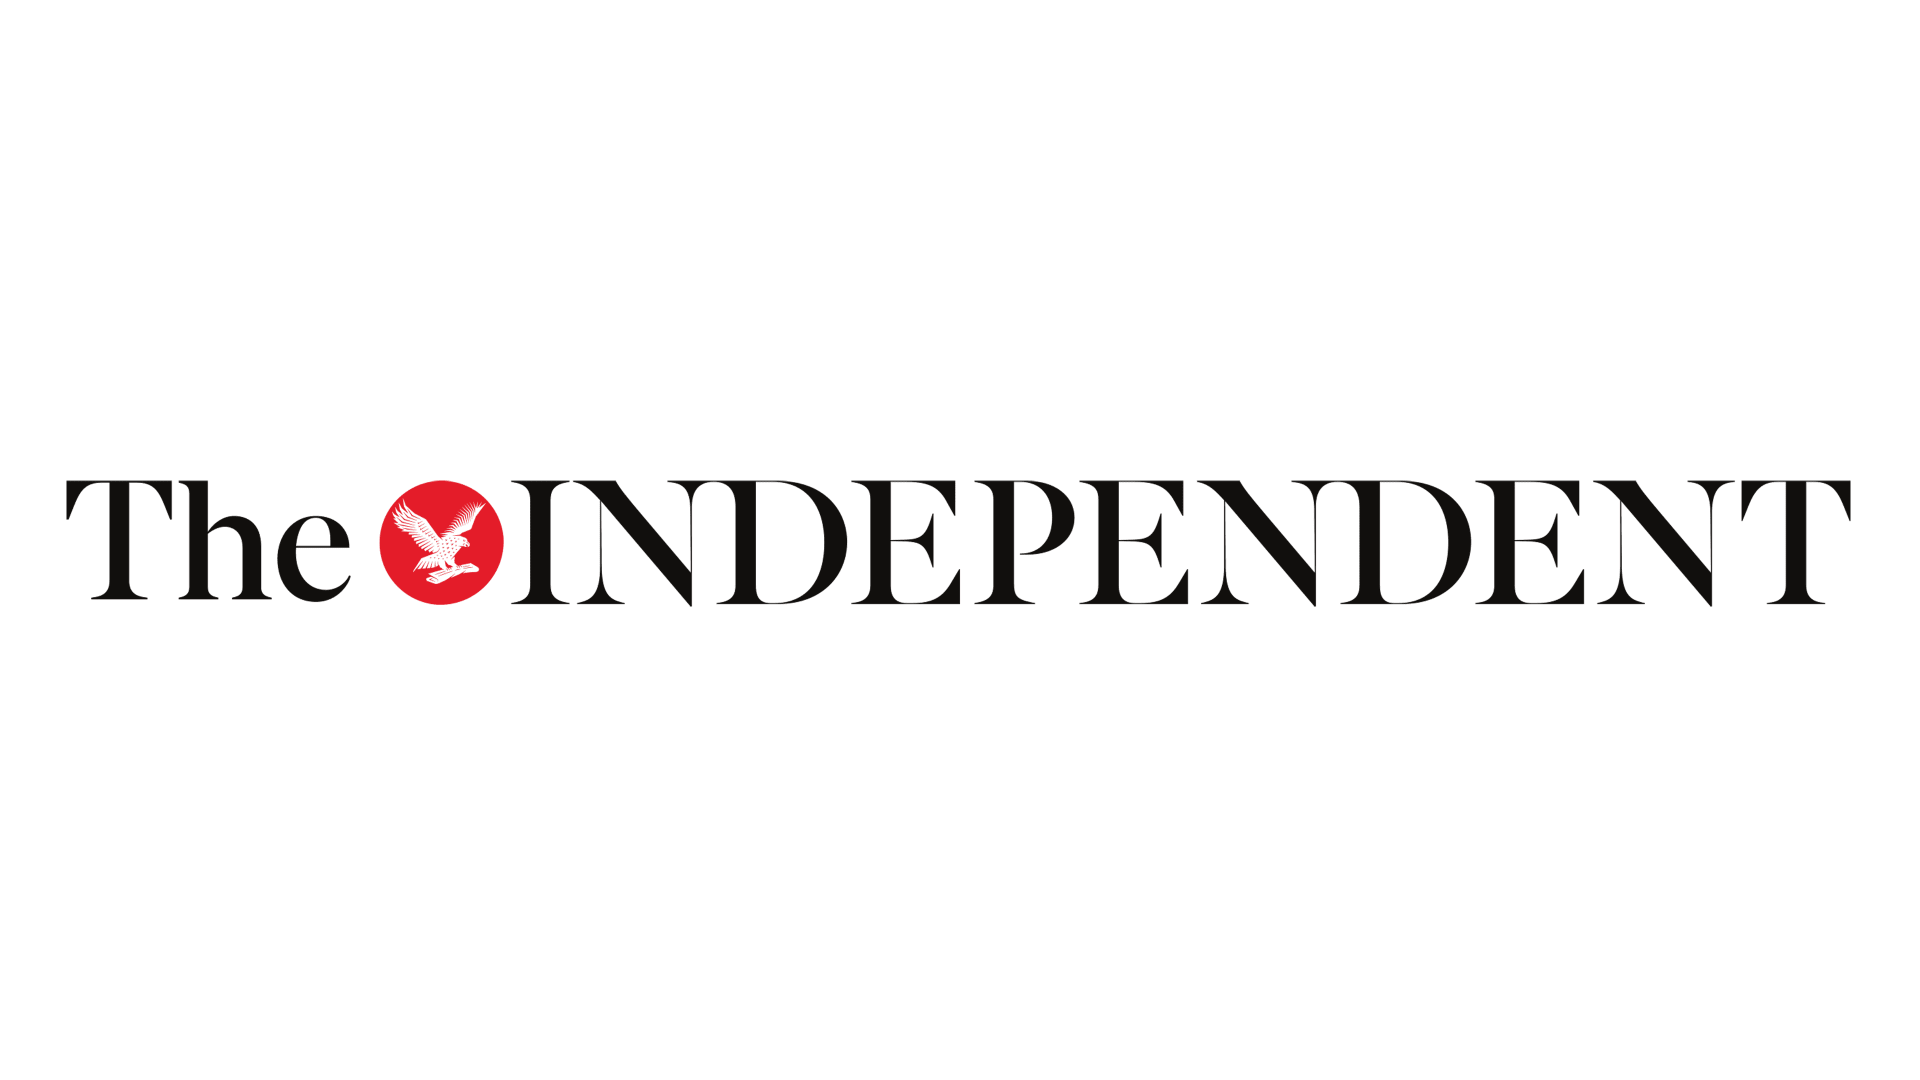 El logotipo independiente